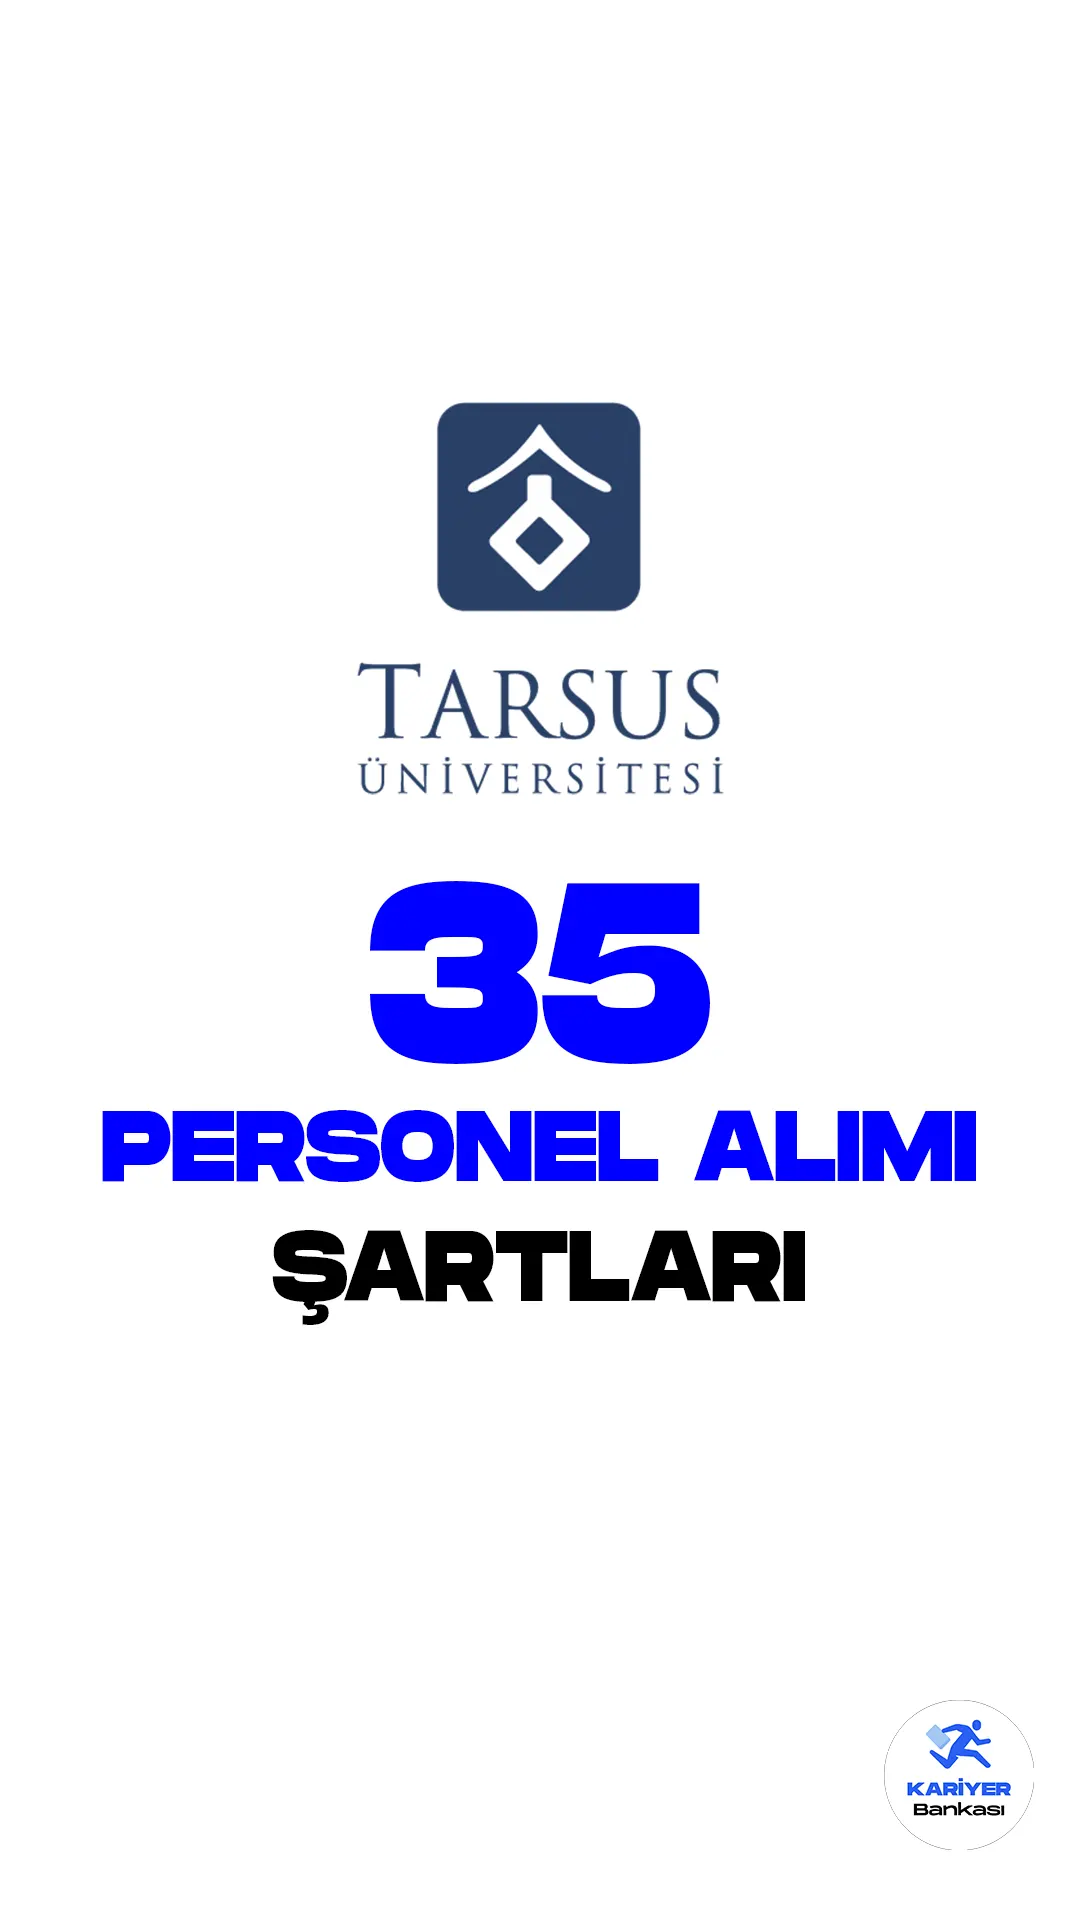 Tarsus Üniversitesi personel alımı başvuru süreci devam ediyor. 10 Mart 2023 tarihli yayımlanan duyuruda, Üniversiteye destek personeli, koruma ve güvenlik görevlisi alımı yapılacağı aktarıldı. İlgili alım başvuruları 10 Mart-27 Mart 2023 tarihleri arasında gerçekleştirilecek. Başvuru yapacak adayların belirtilen başvuru şartlarını dikkatle incelemesi gerekmektedir.Tarsus Üniversitesi personel alımı başvuru süreci devam ediyor. 10 Mart 2023 tarihli yayımlanan duyuruda, Üniversiteye destek personeli, koruma ve güvenlik görevlisi alımı yapılacağı aktarıldı. İlgili alım başvuruları 10 Mart-27 Mart 2023 tarihleri arasında gerçekleştirilecek. Başvuru yapacak adayların belirtilen başvuru şartlarını dikkatle incelemesi gerekmektedir.